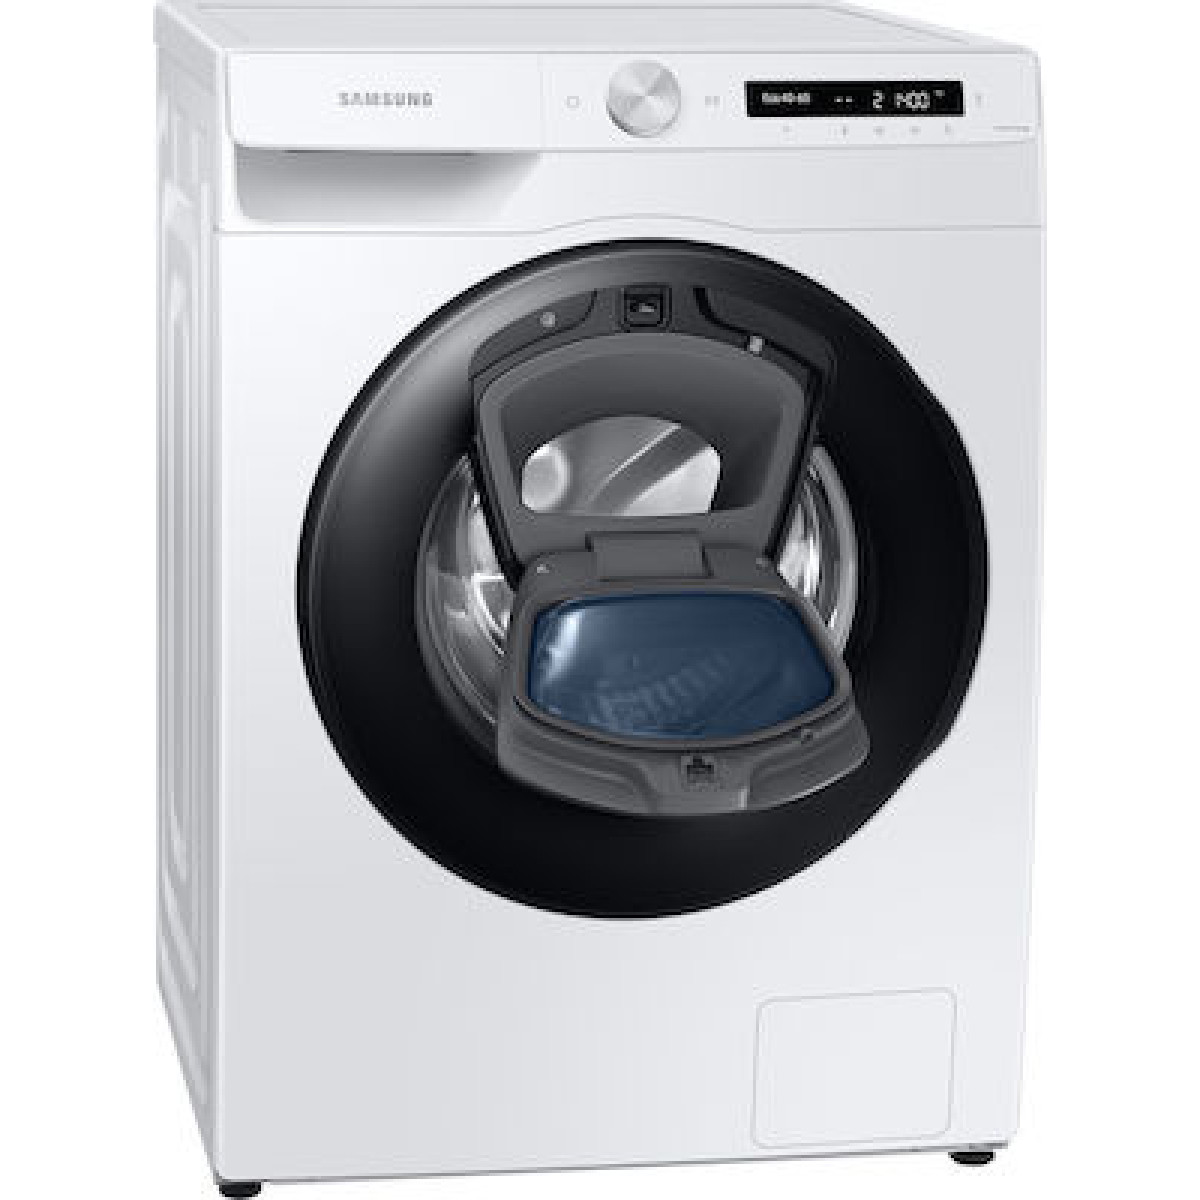 Πλυντήριο ρούχων Samsung WW80T554DAW/S6 1400 Στροφές 8kg  Πλυντήρια ρούχων